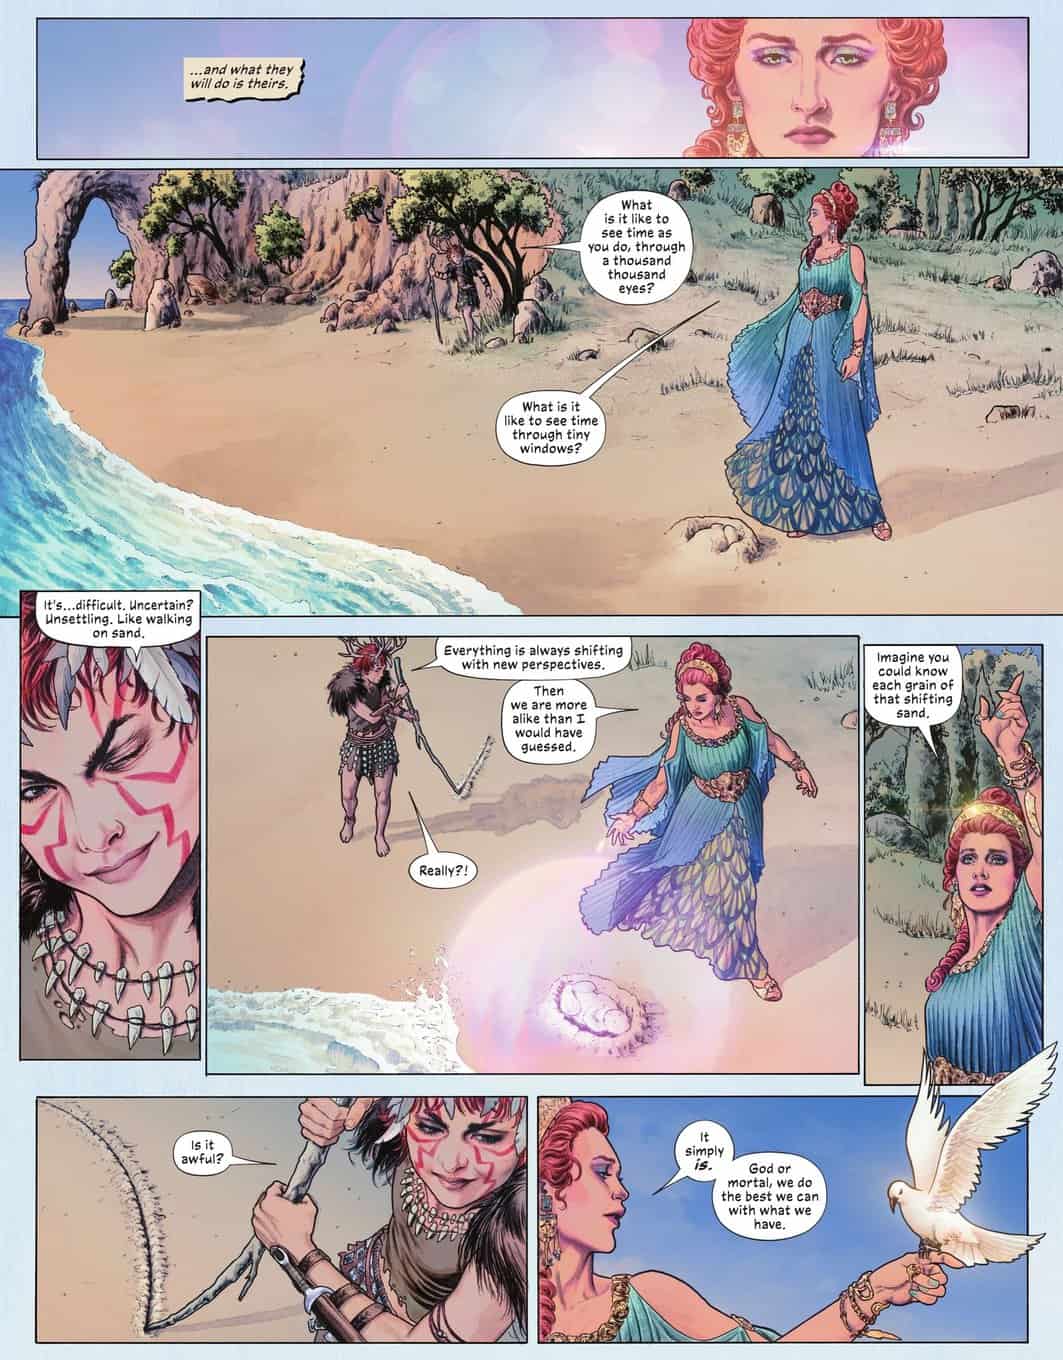 Wonder Woman Historia #3 spoilers 16